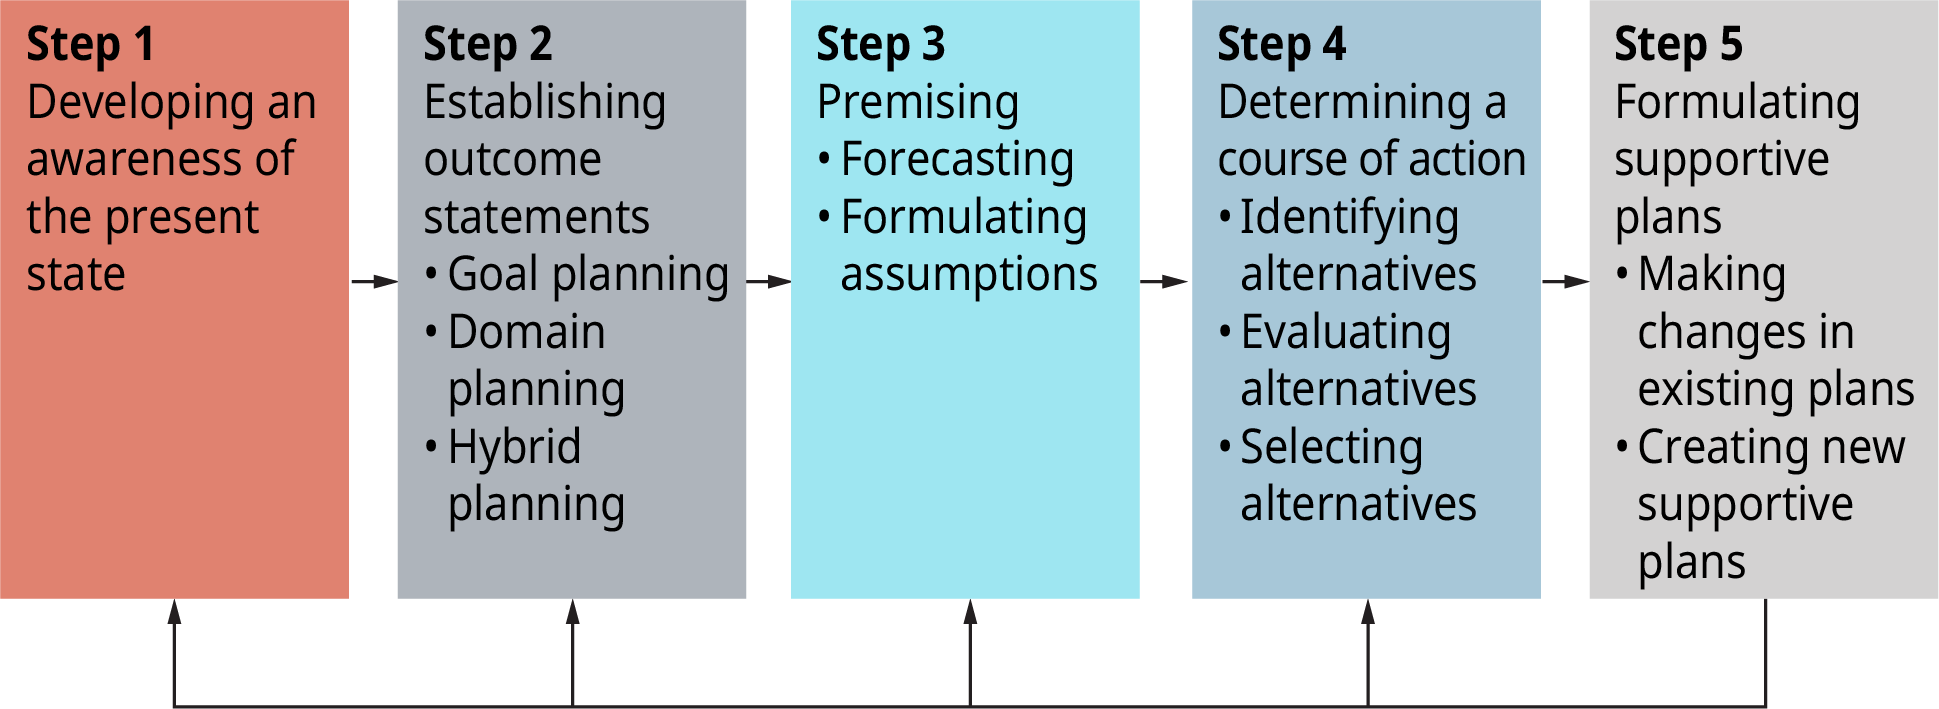 流程图显示了计划过程中的五个步骤。